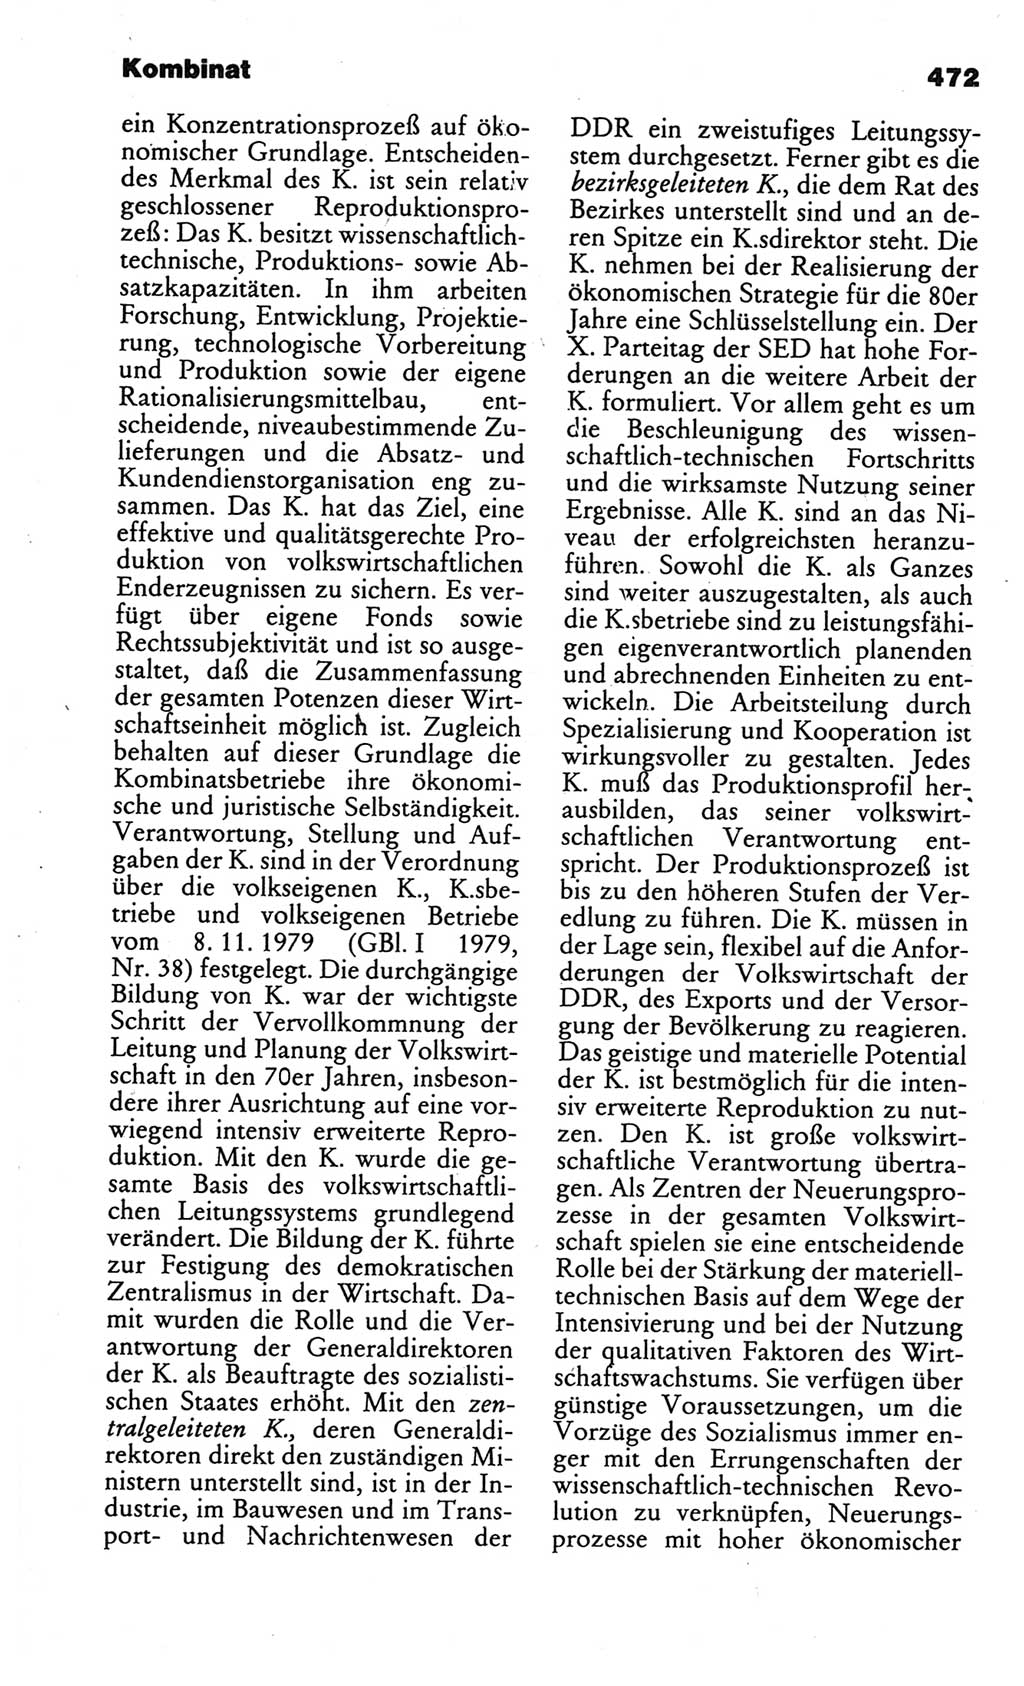 Kleines politisches Wörterbuch [Deutsche Demokratische Republik (DDR)] 1986, Seite 472 (Kl. pol. Wb. DDR 1986, S. 472)